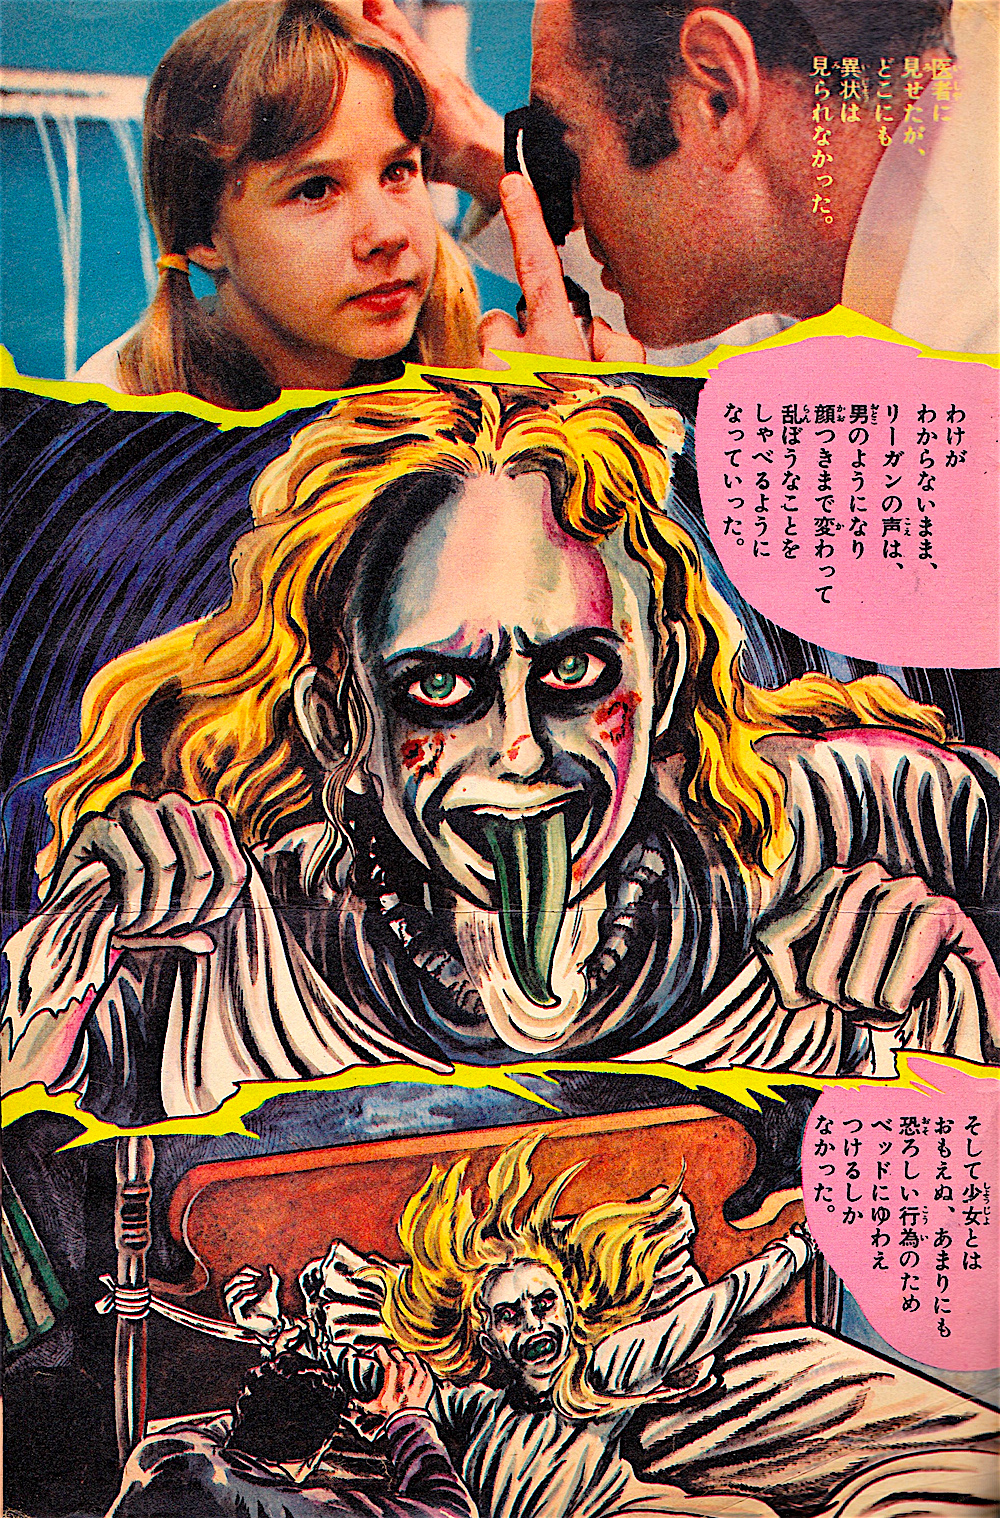 Kazuo Umezu - The Exorcist Comic, 1974